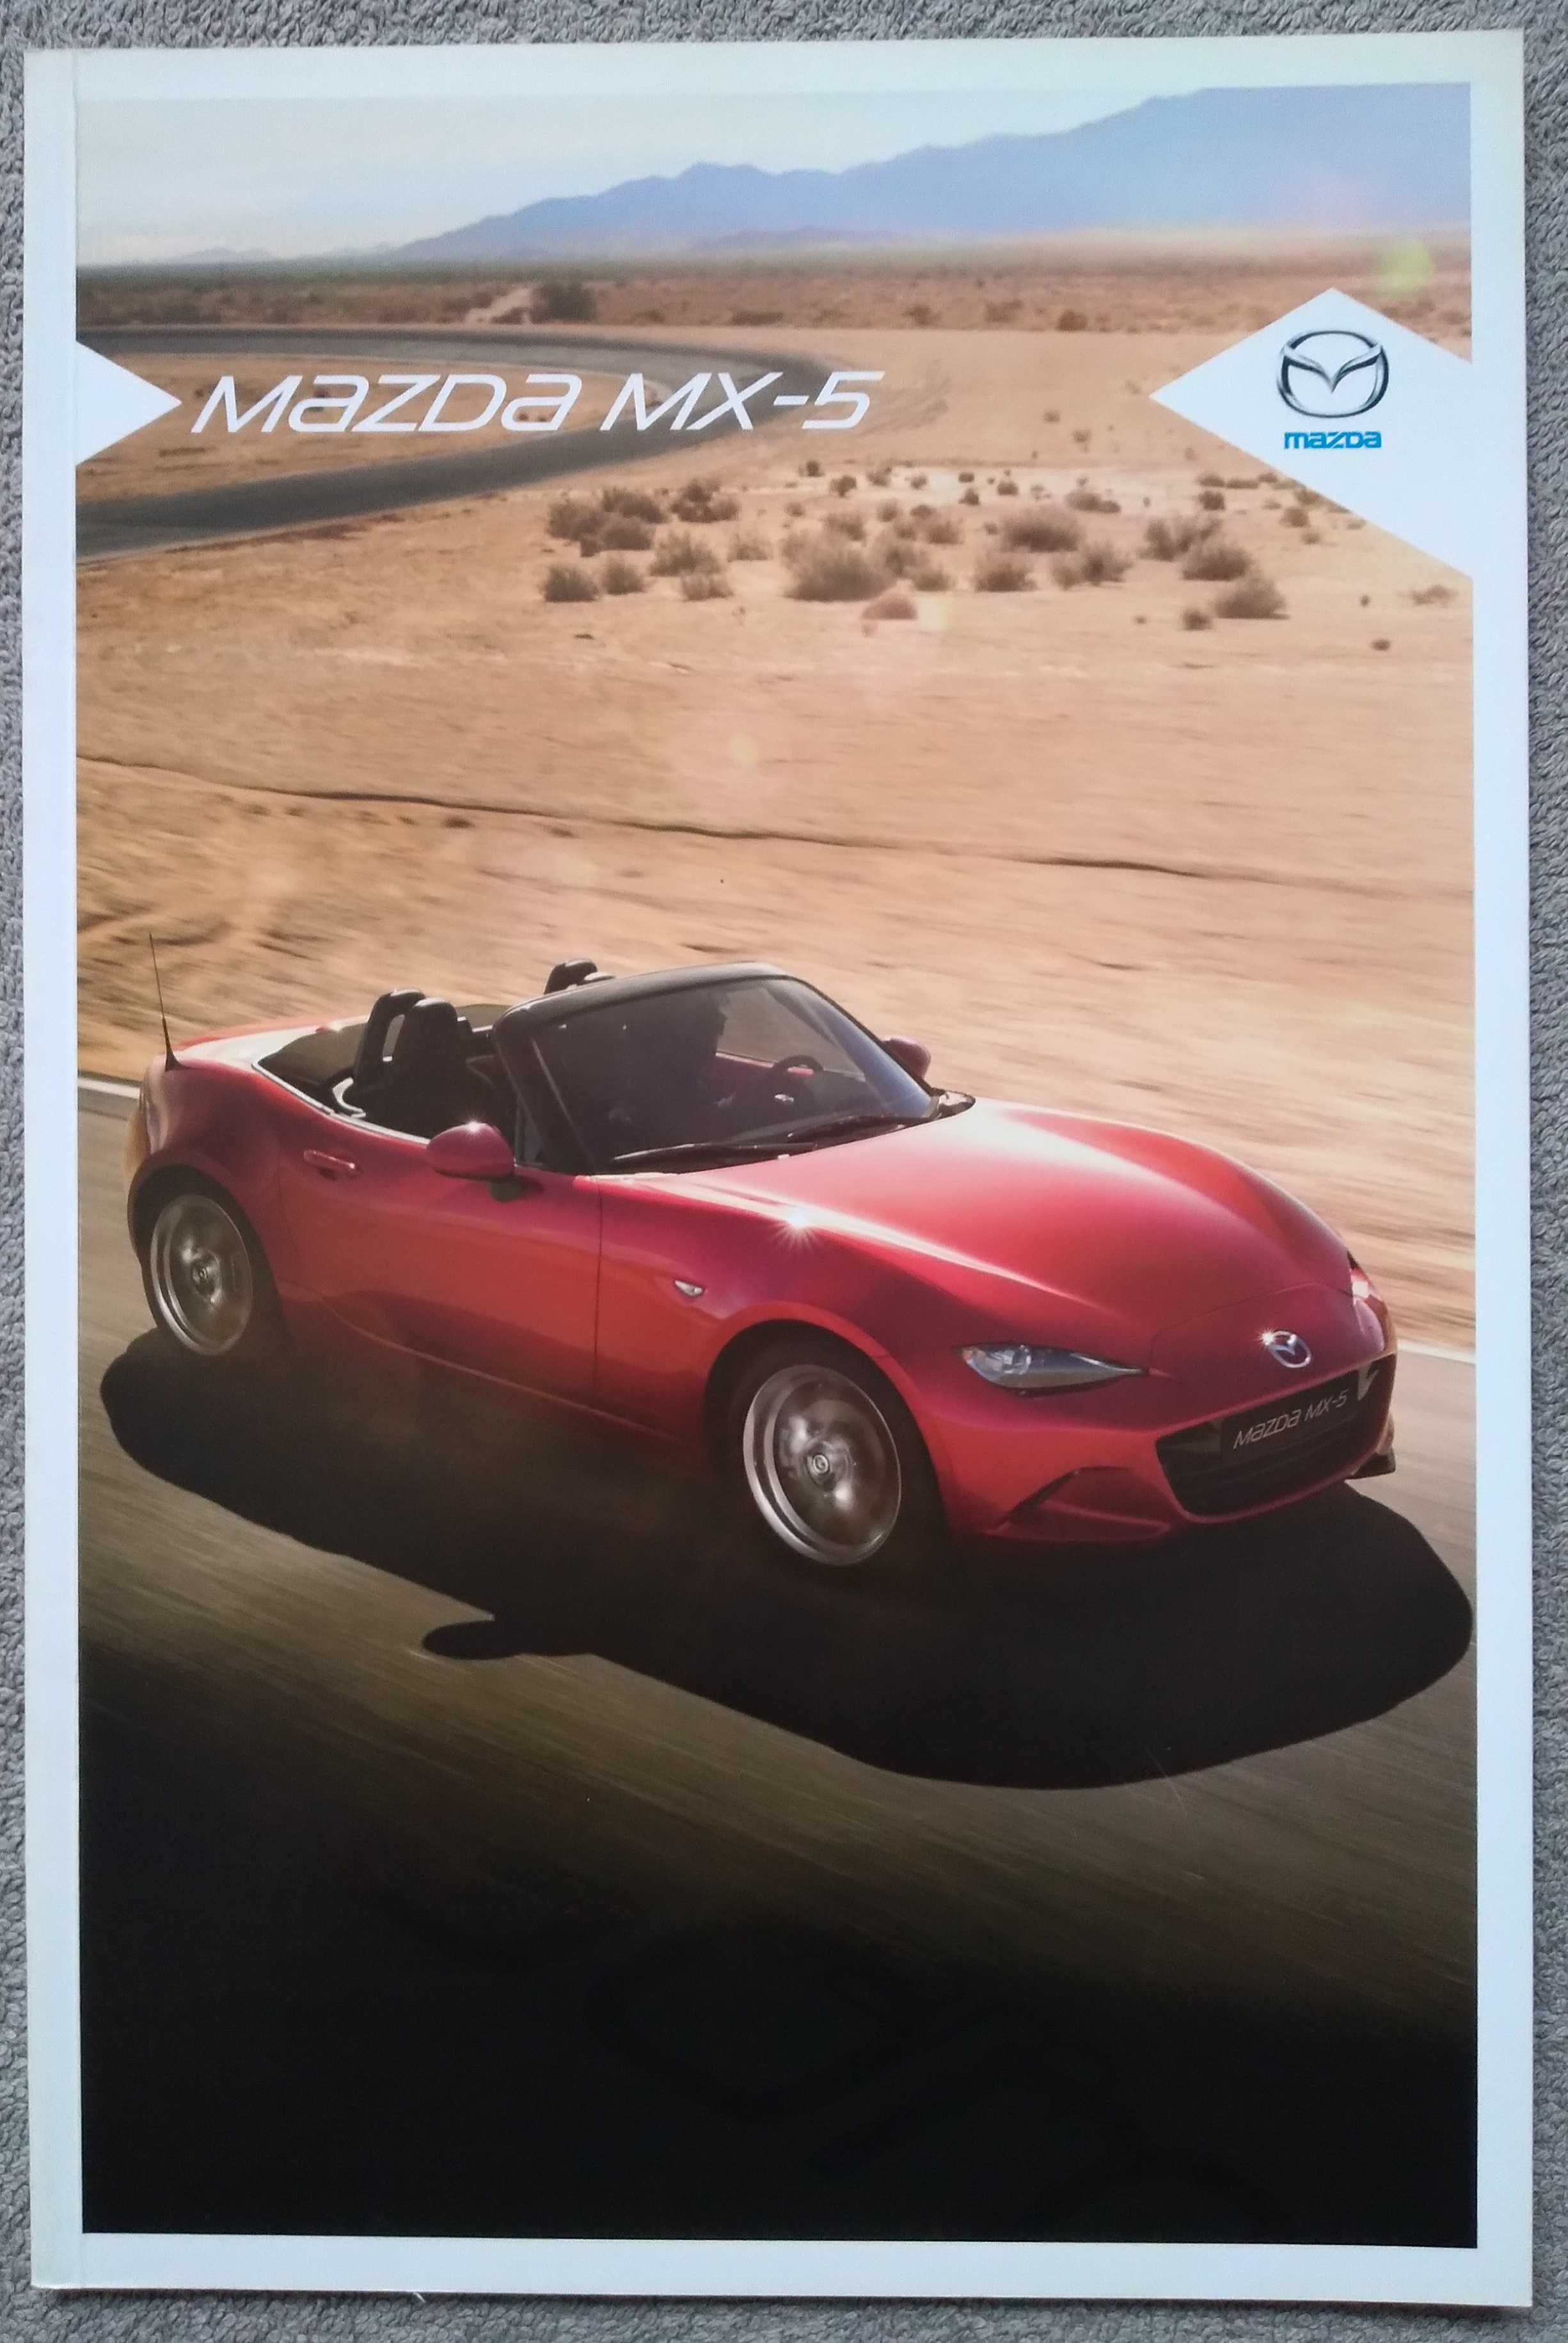 Prospekt Mazda MX-5 rok 2015